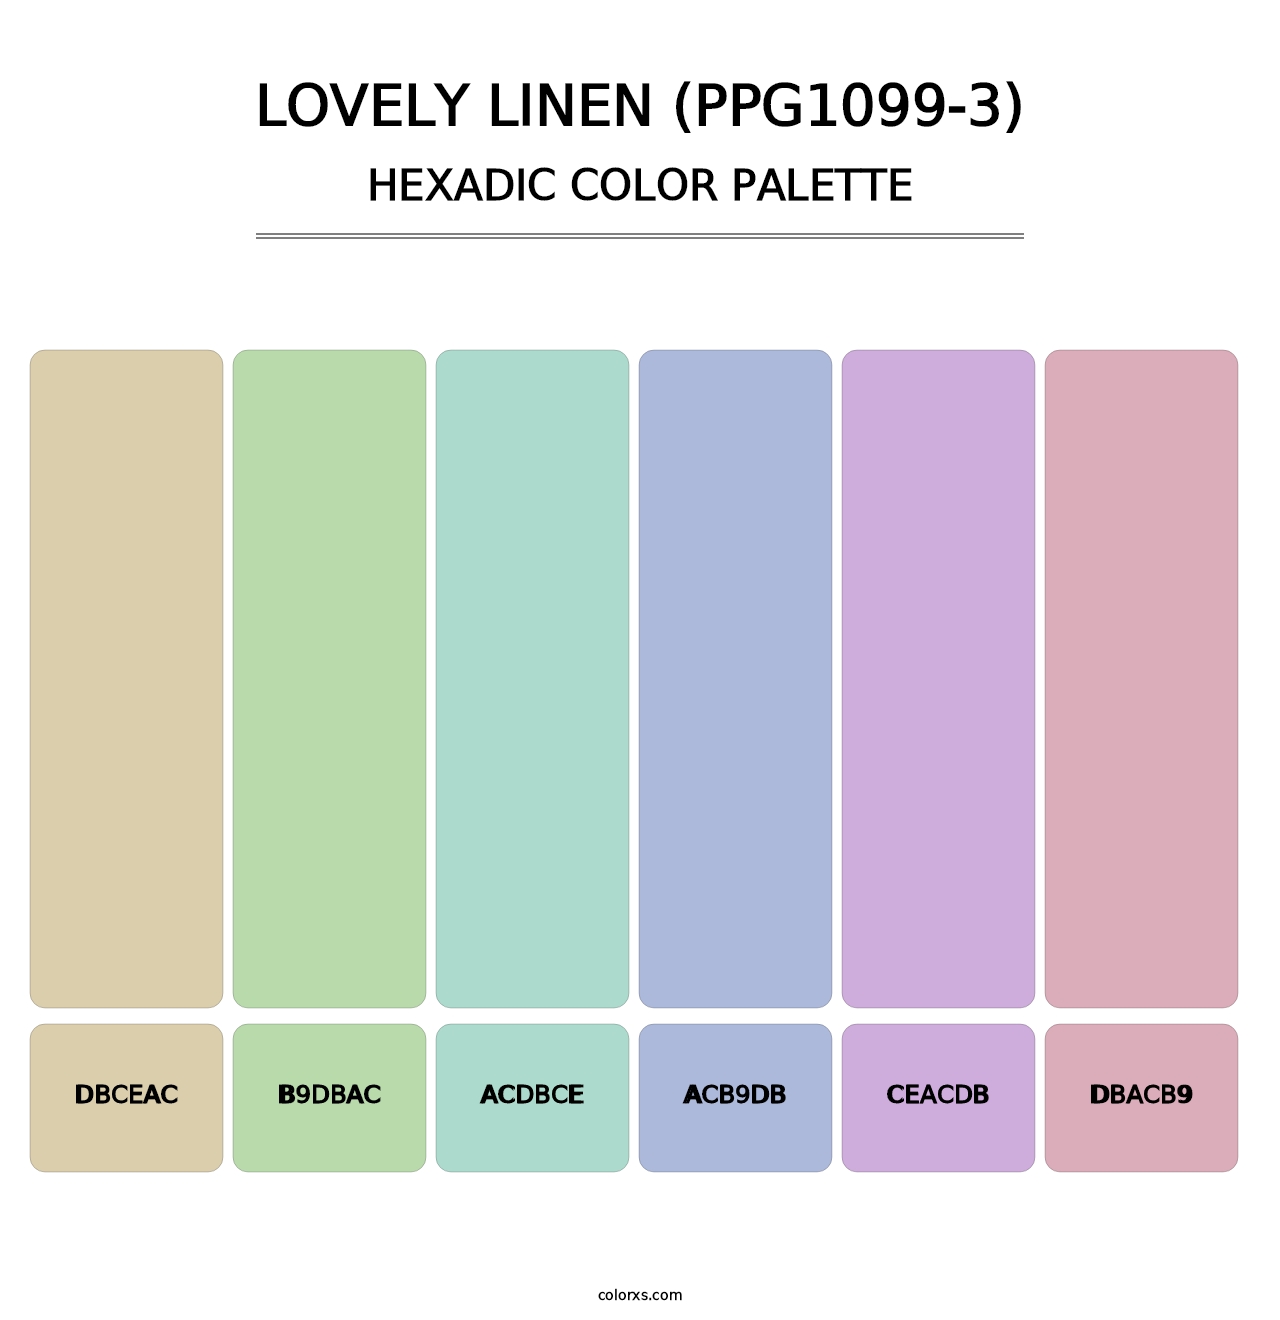 Lovely Linen (PPG1099-3) - Hexadic Color Palette